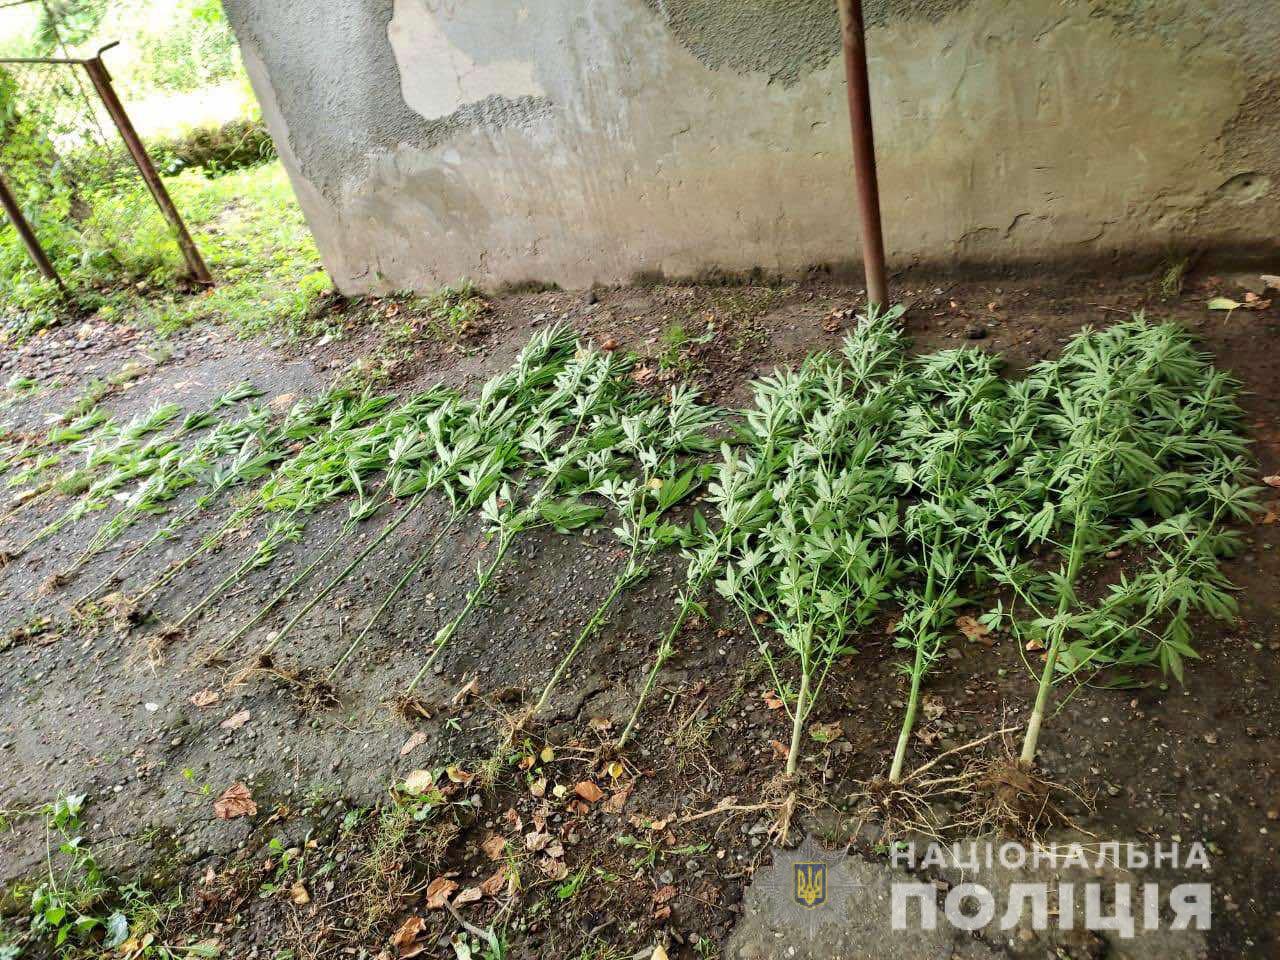 Поліція затримала юного жителя Мукачівщини, який у себе вдома вирощував коноплю (ФОТО)